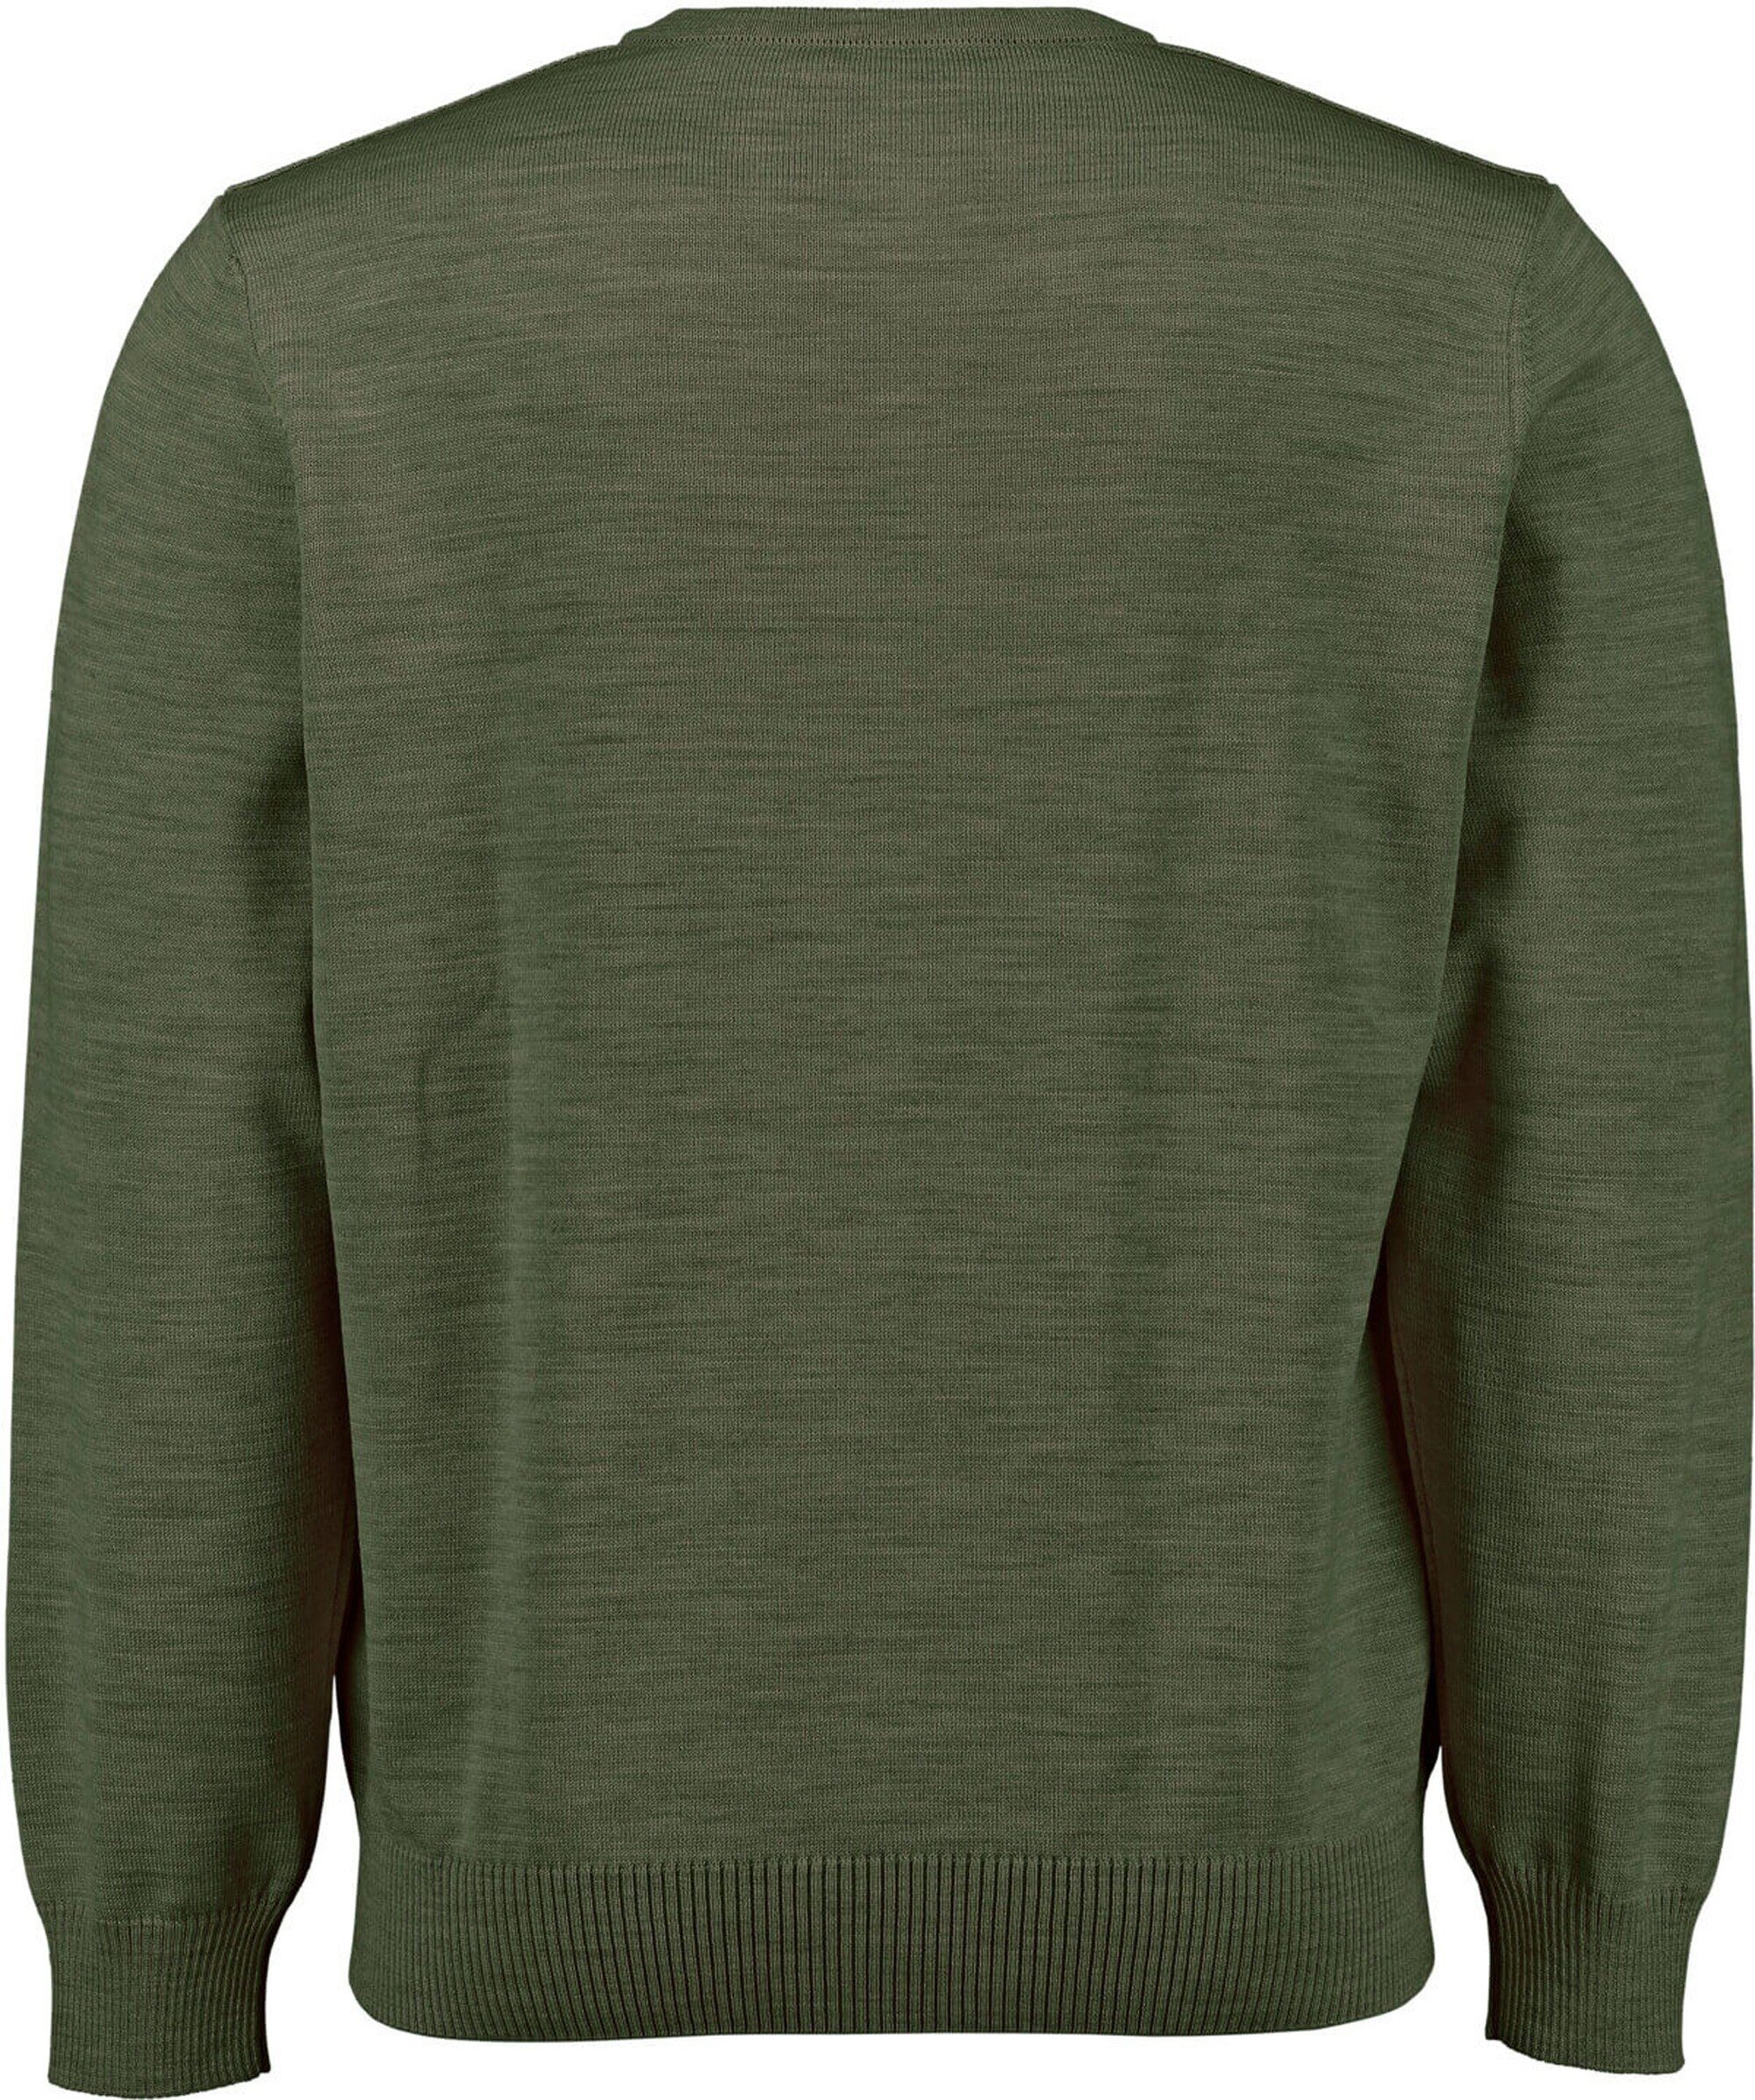 V-Ausschnitt grün Muenchen MAERZ MAERZ Pullover V-Ausschnitt-Pullover